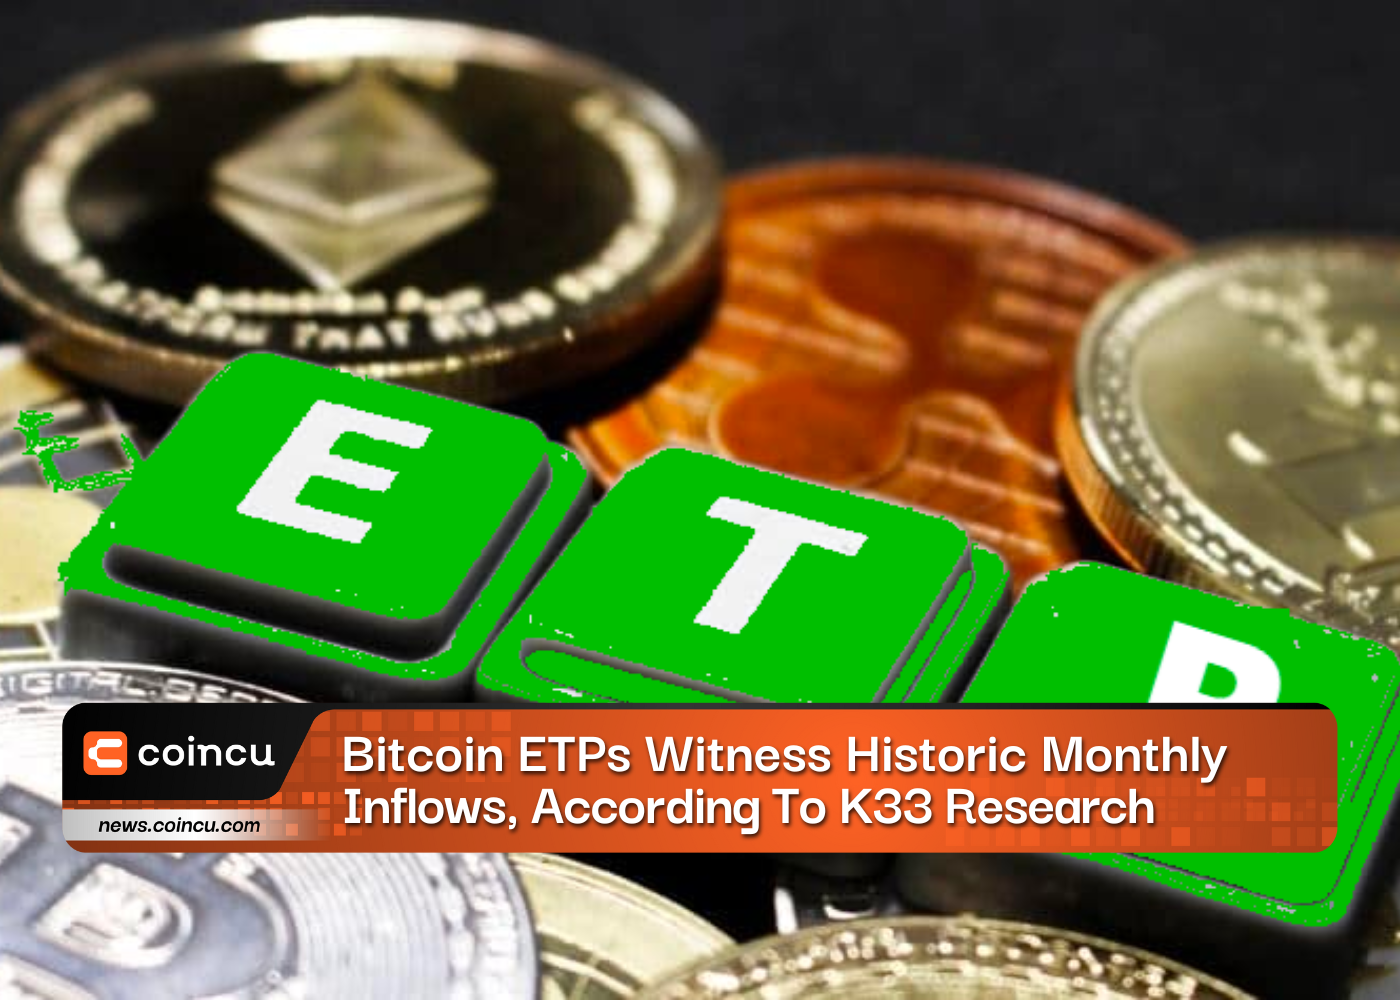 Los ETP de Bitcoin son testigos de un mes histórico